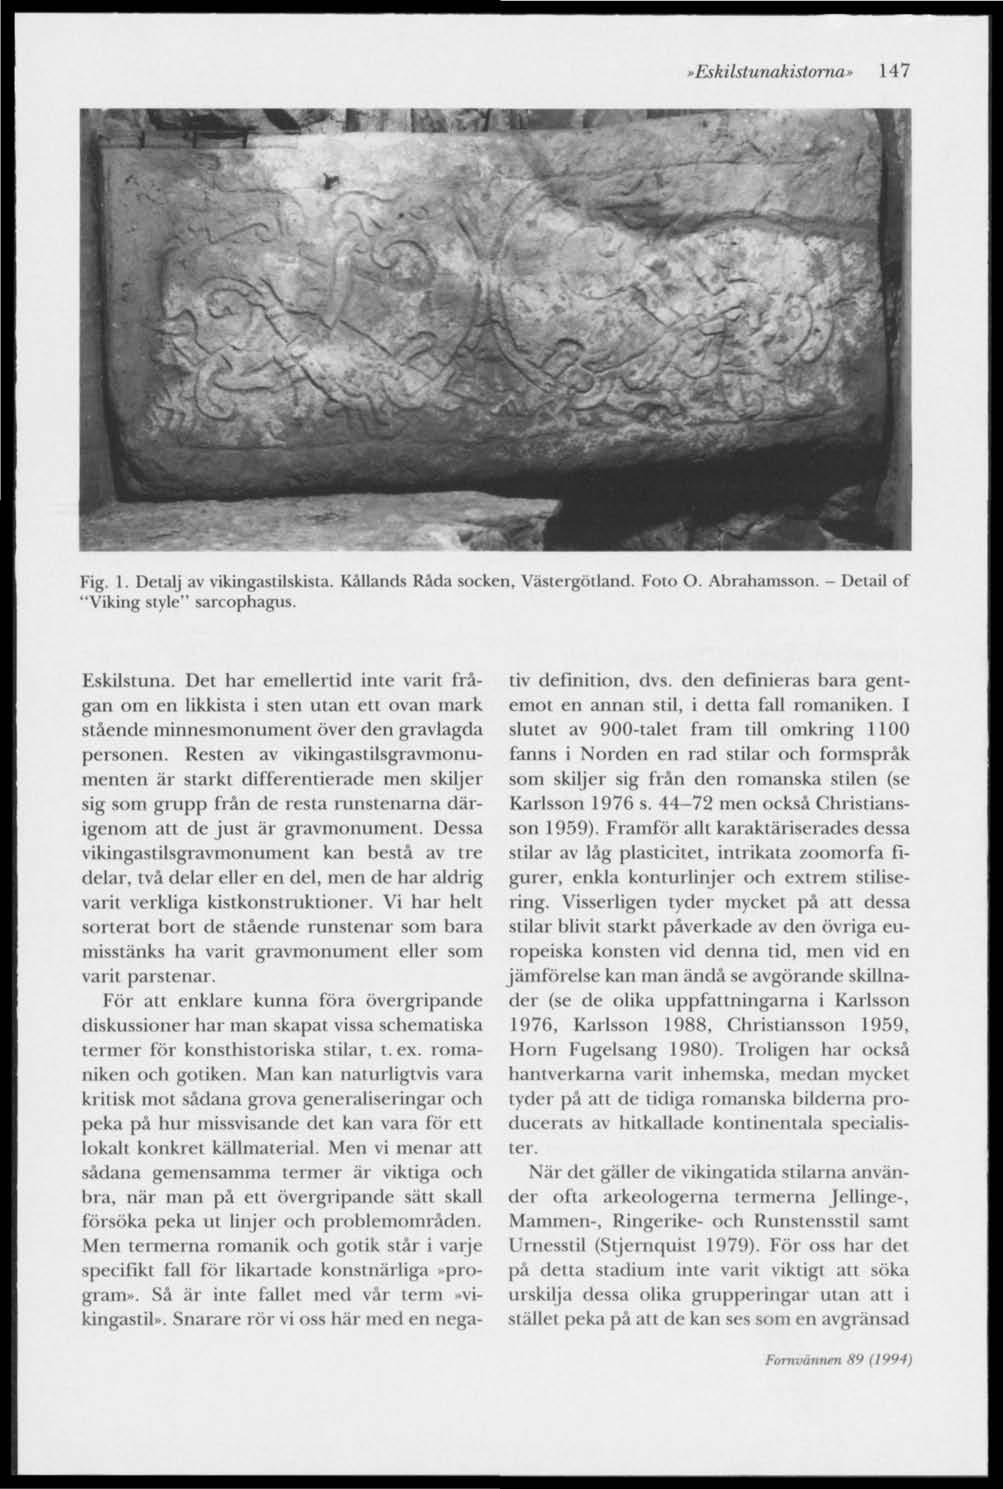 »Eskilstunakistoma» 147 Fig. 1. Detalj av vikingastilskista. Kållands Råda socken, Västergötland. Foto O. Abrahamsson. "Viking style" sarcophagus. Detail of Eskilstuna.